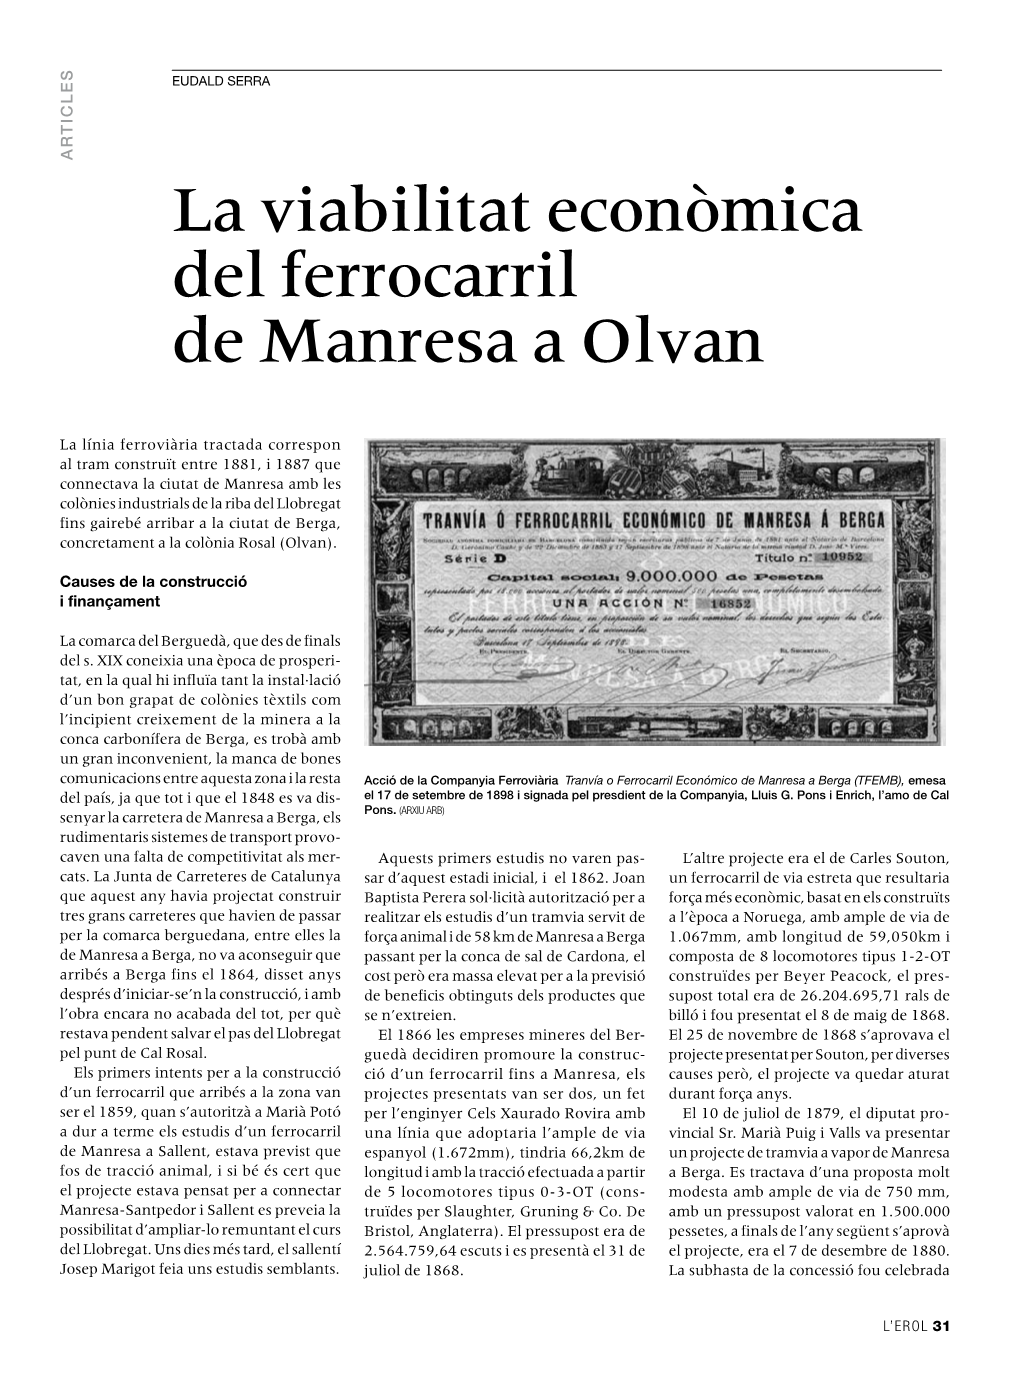 La Viabilitat Econòmica Del Ferrocarril De Manresa a Olvan